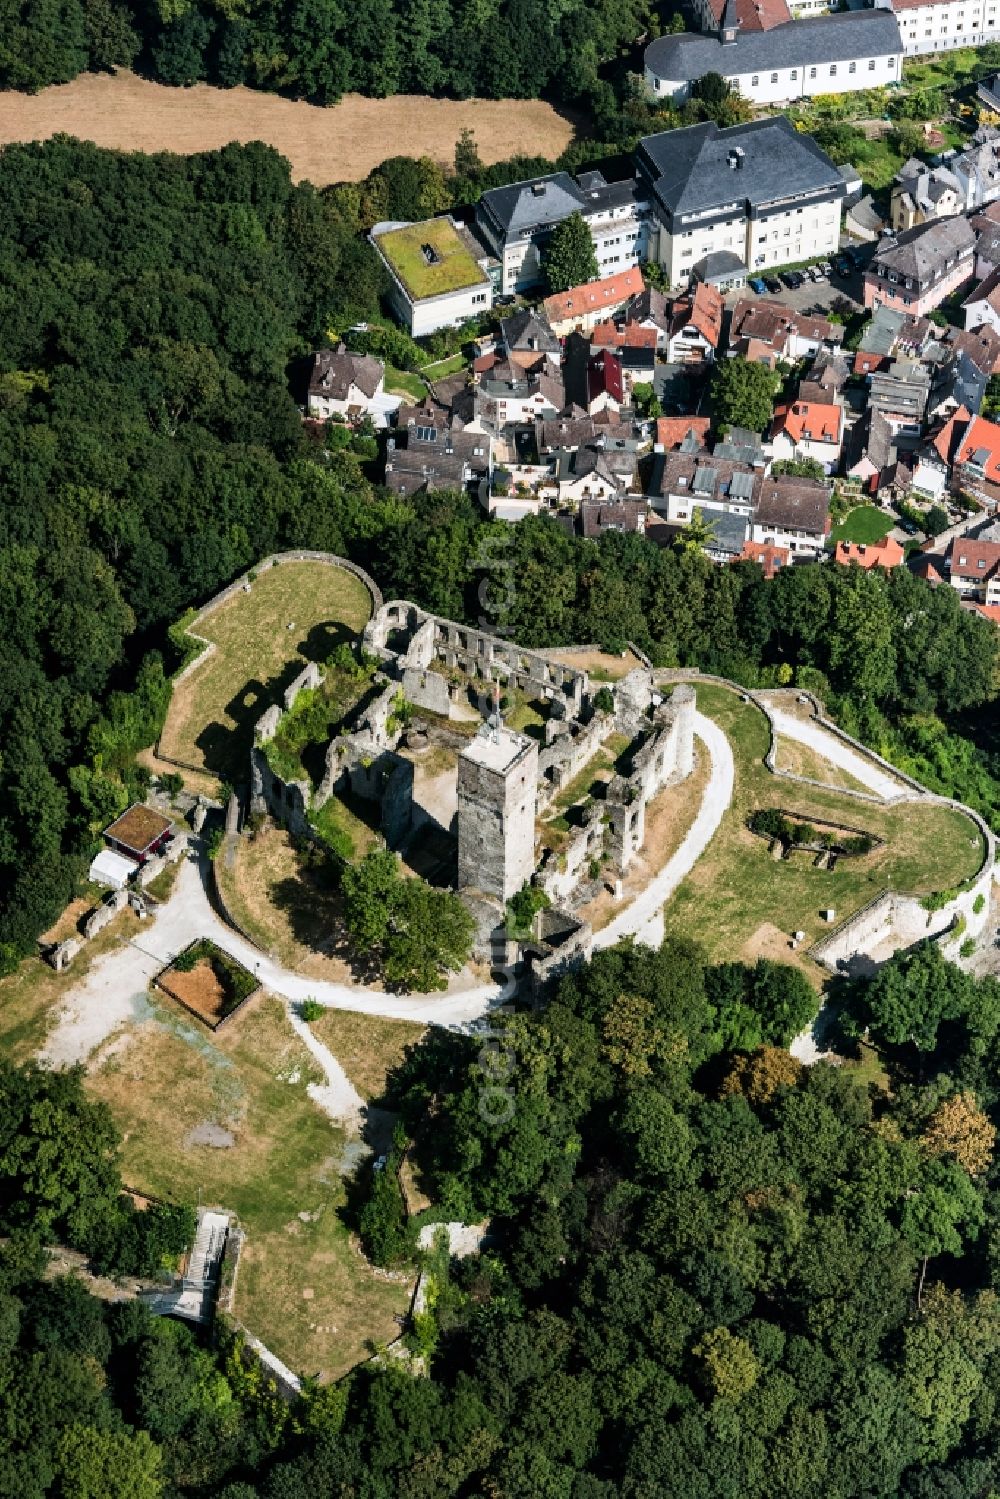 Aerial photograph Königstein im Taunus - Ruins and vestiges of the former castle Koenigstein in Koenigstein im Taunus in the state Hesse